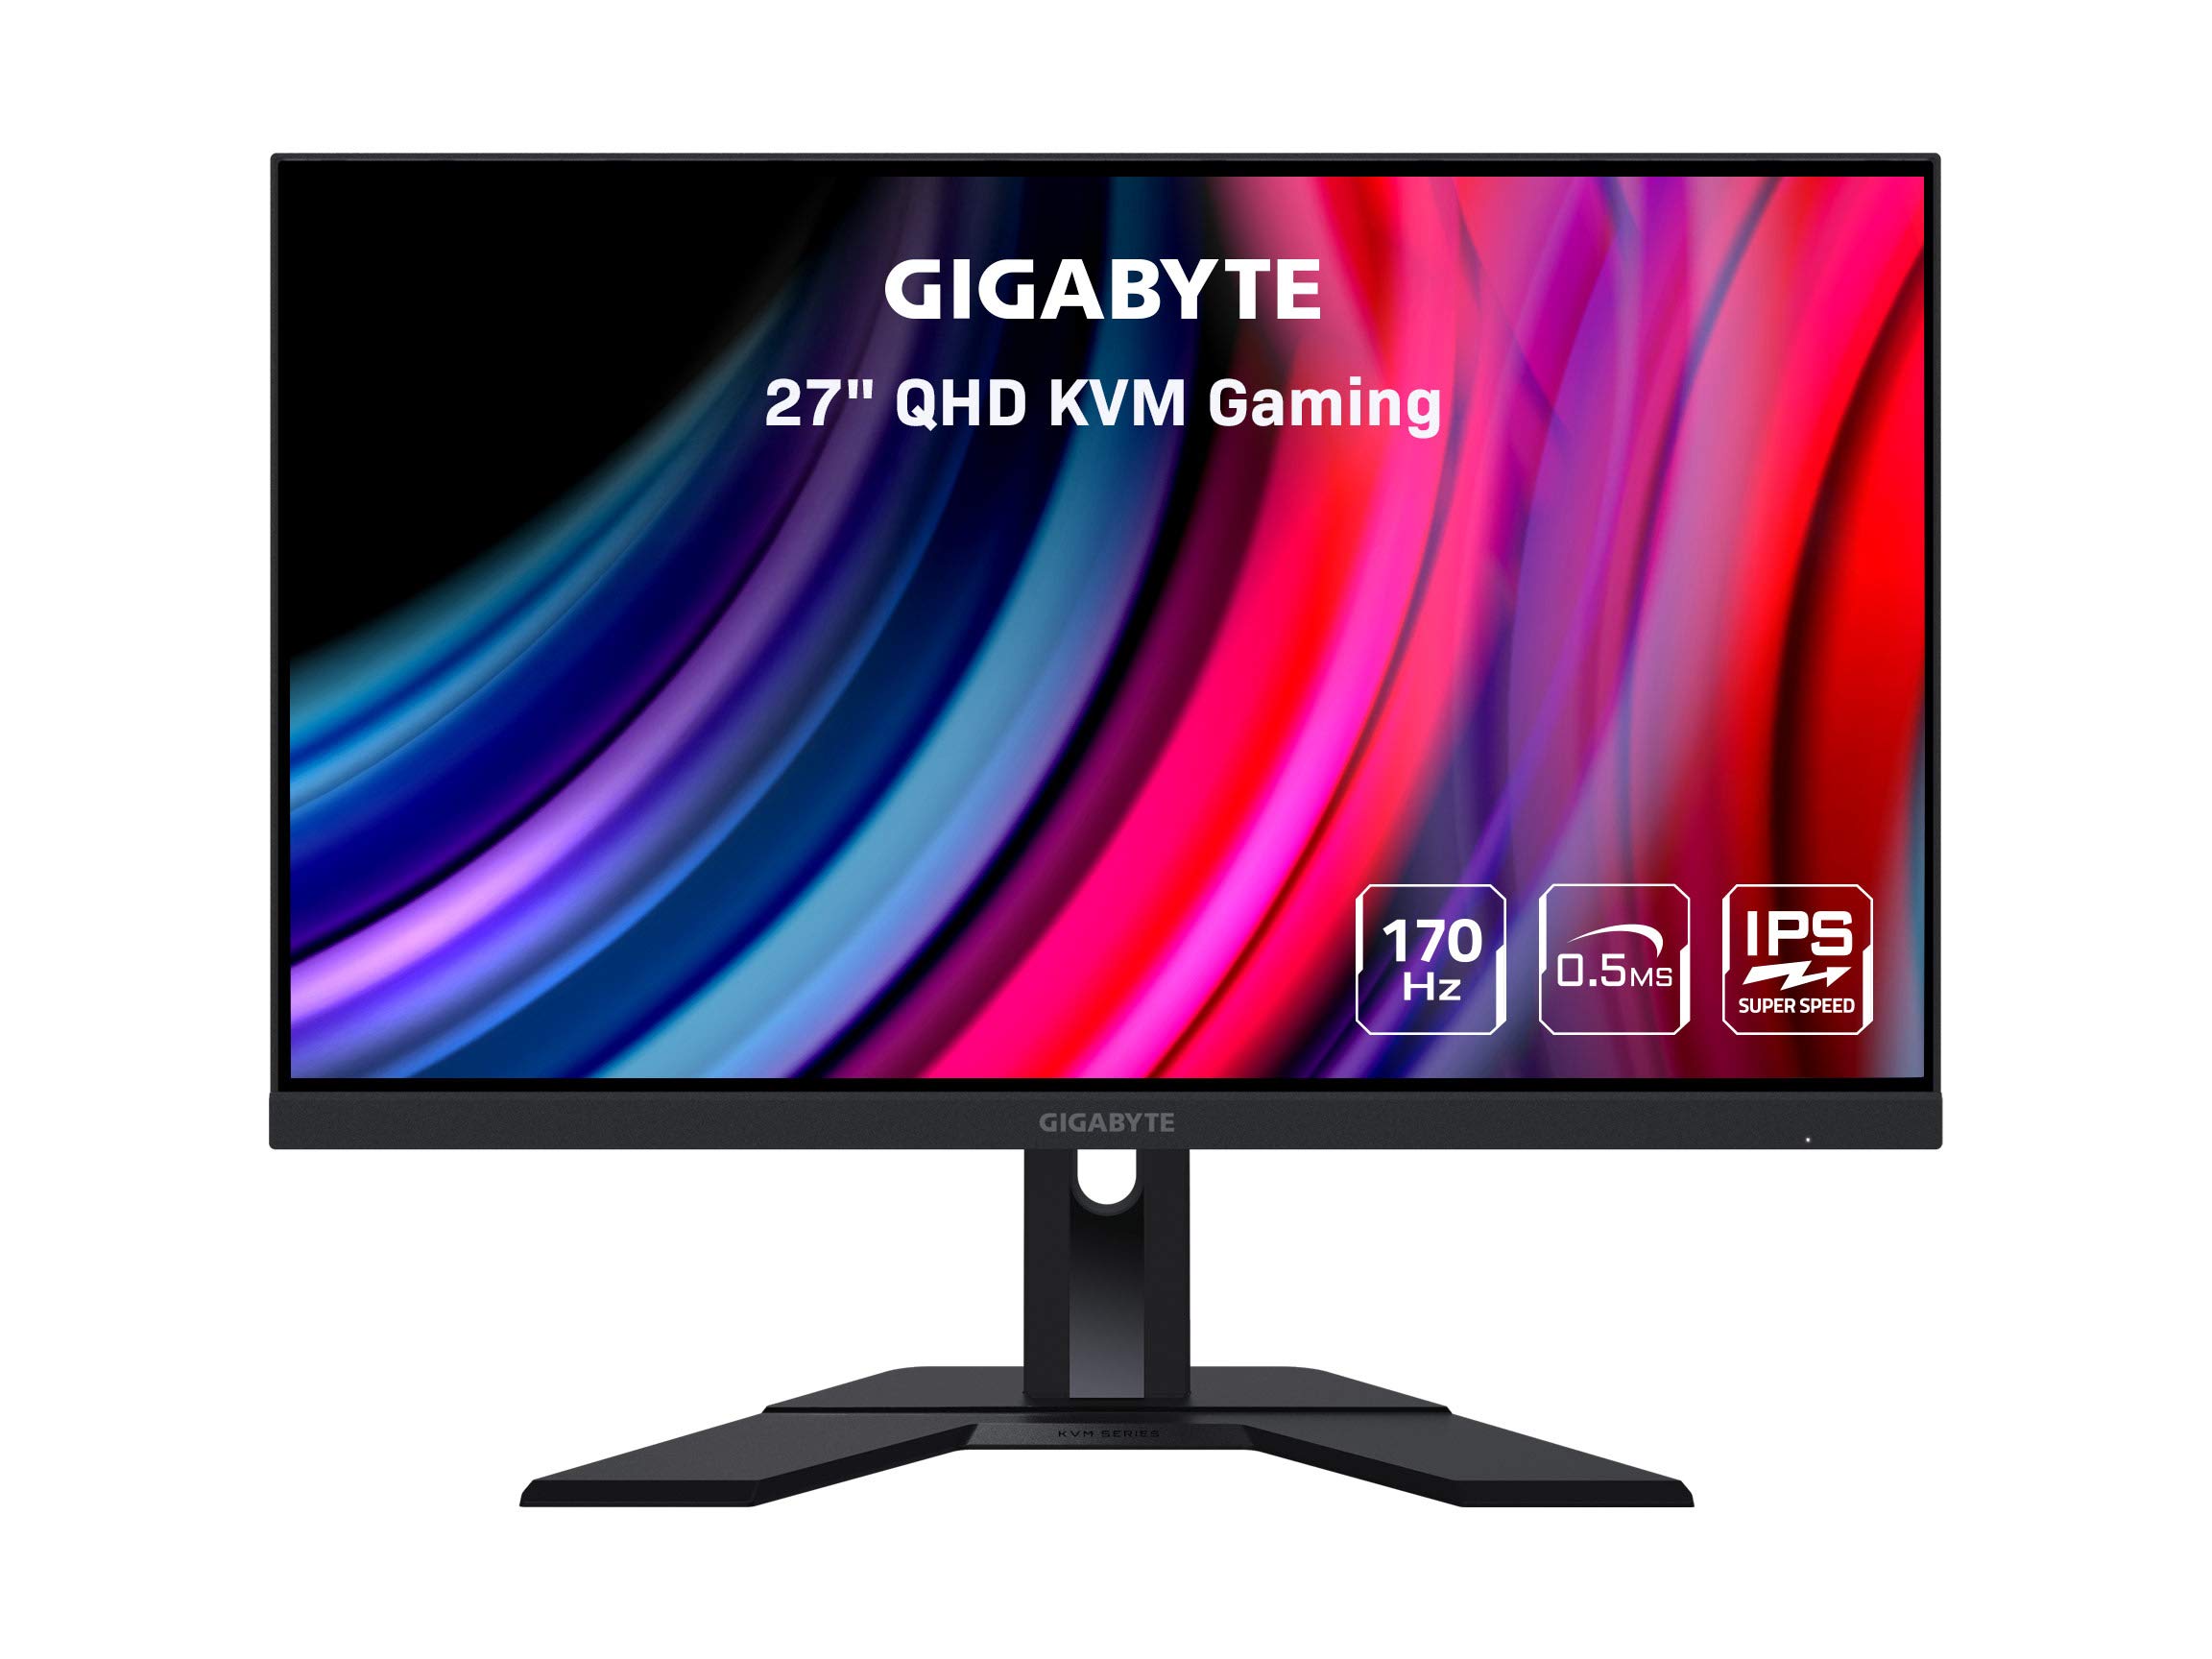 Amazon: GIGABYTE M27Q 27" 170Hz 1440P KVM Gaming Monitor, 2560 x 1440 SS IPS Display $259.99